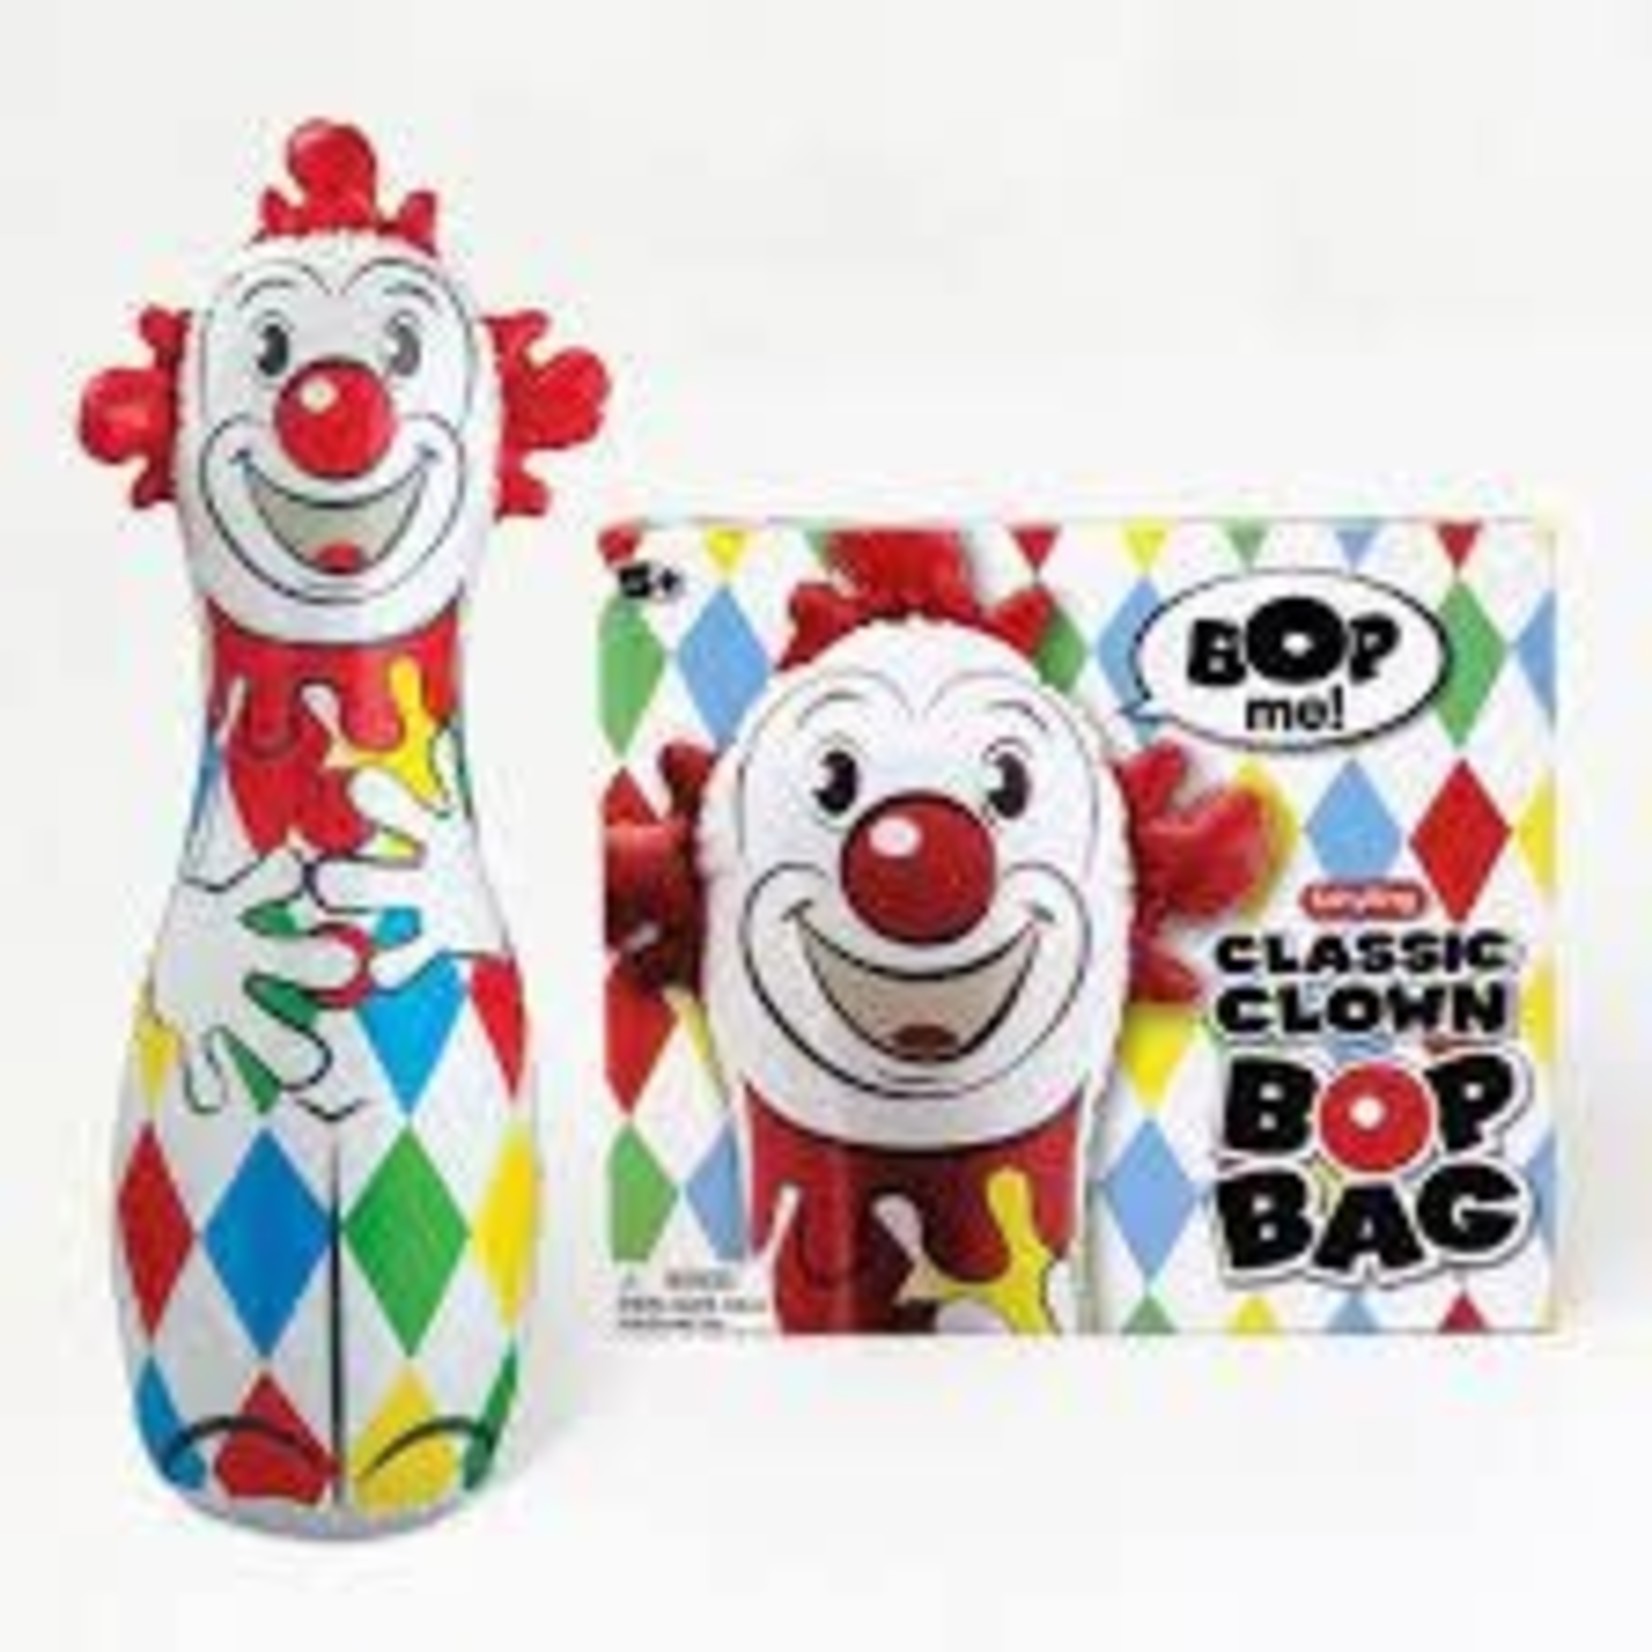 Schylling Clown Bop Bag